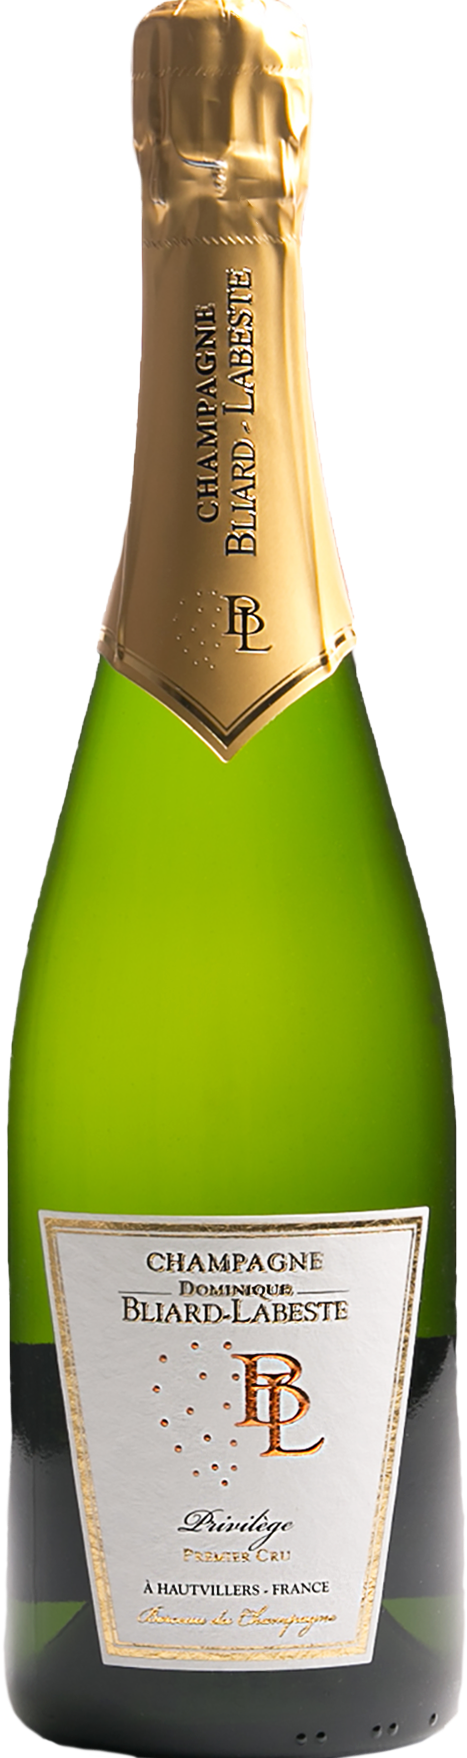 Champagne Bliard-Labeste Premier Cru  Privilège - o.J., Brut, weiß